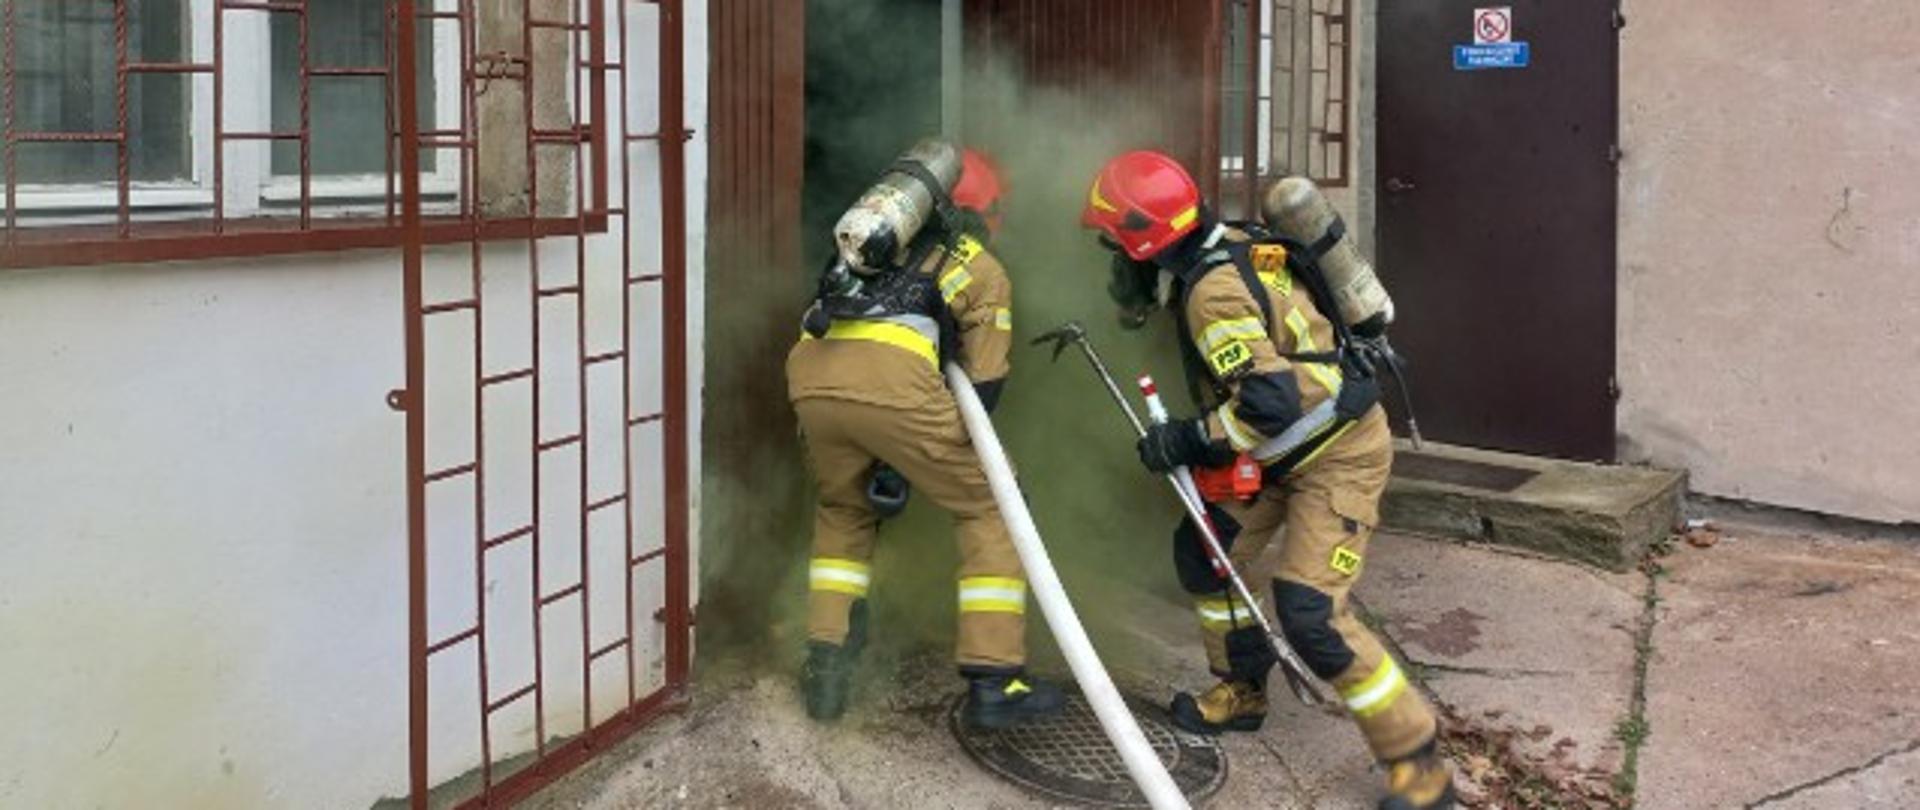 Ćwiczenia strażackie na terenie Samodzielnego Publicznego Zakładu Opieki Zdrowotnej w Mławie